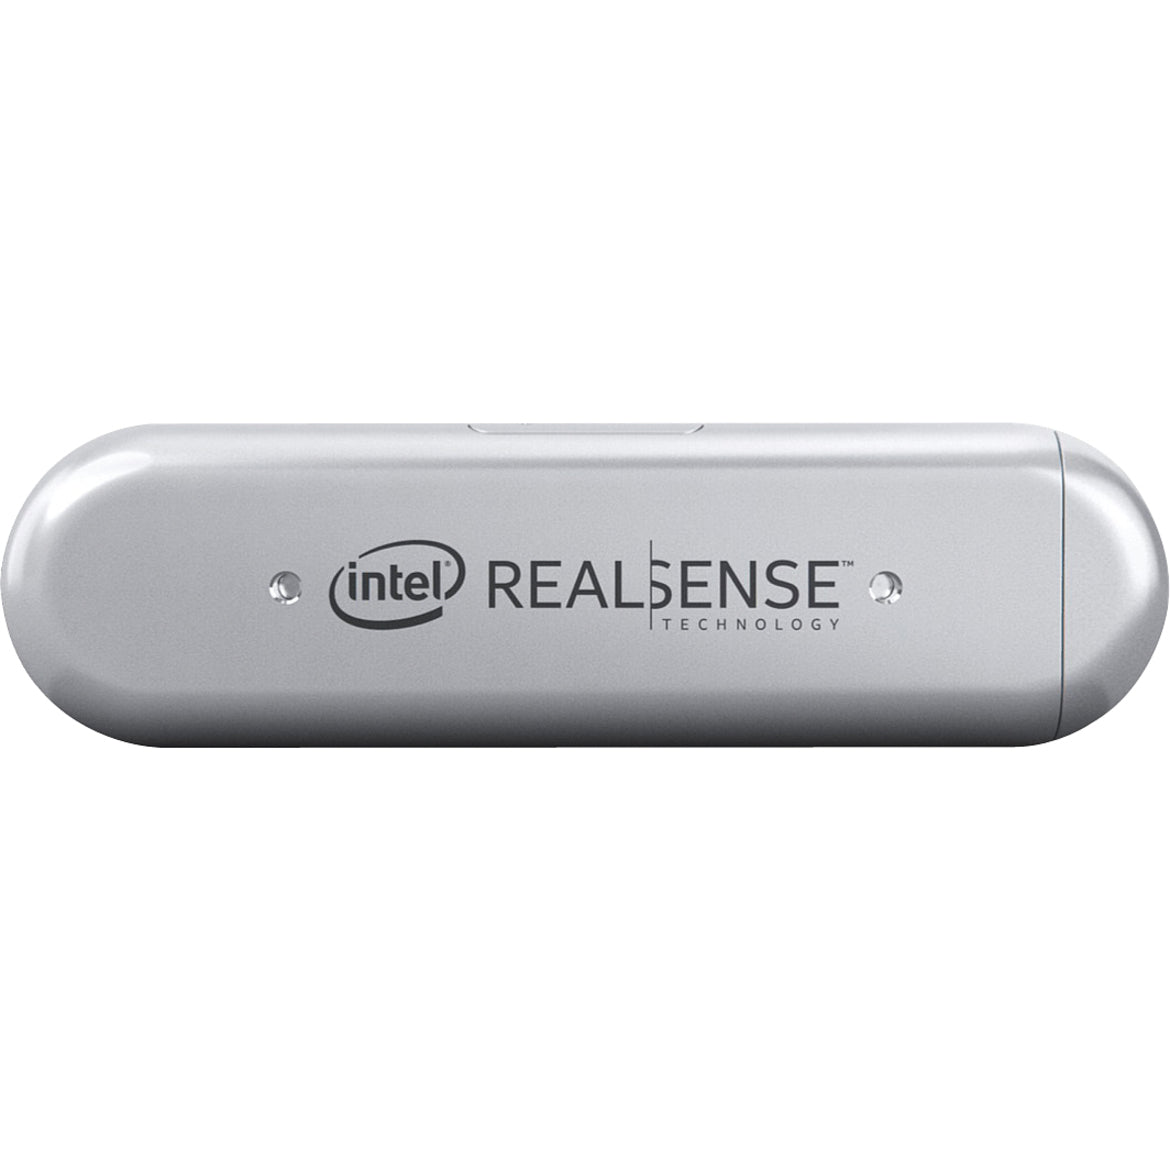 Intel 82635D435IDK5P RealSense Depth Camera D435i, USB 3.1, 2 Megapixel, 1920 x 1080, 30 fps, 87° FOV